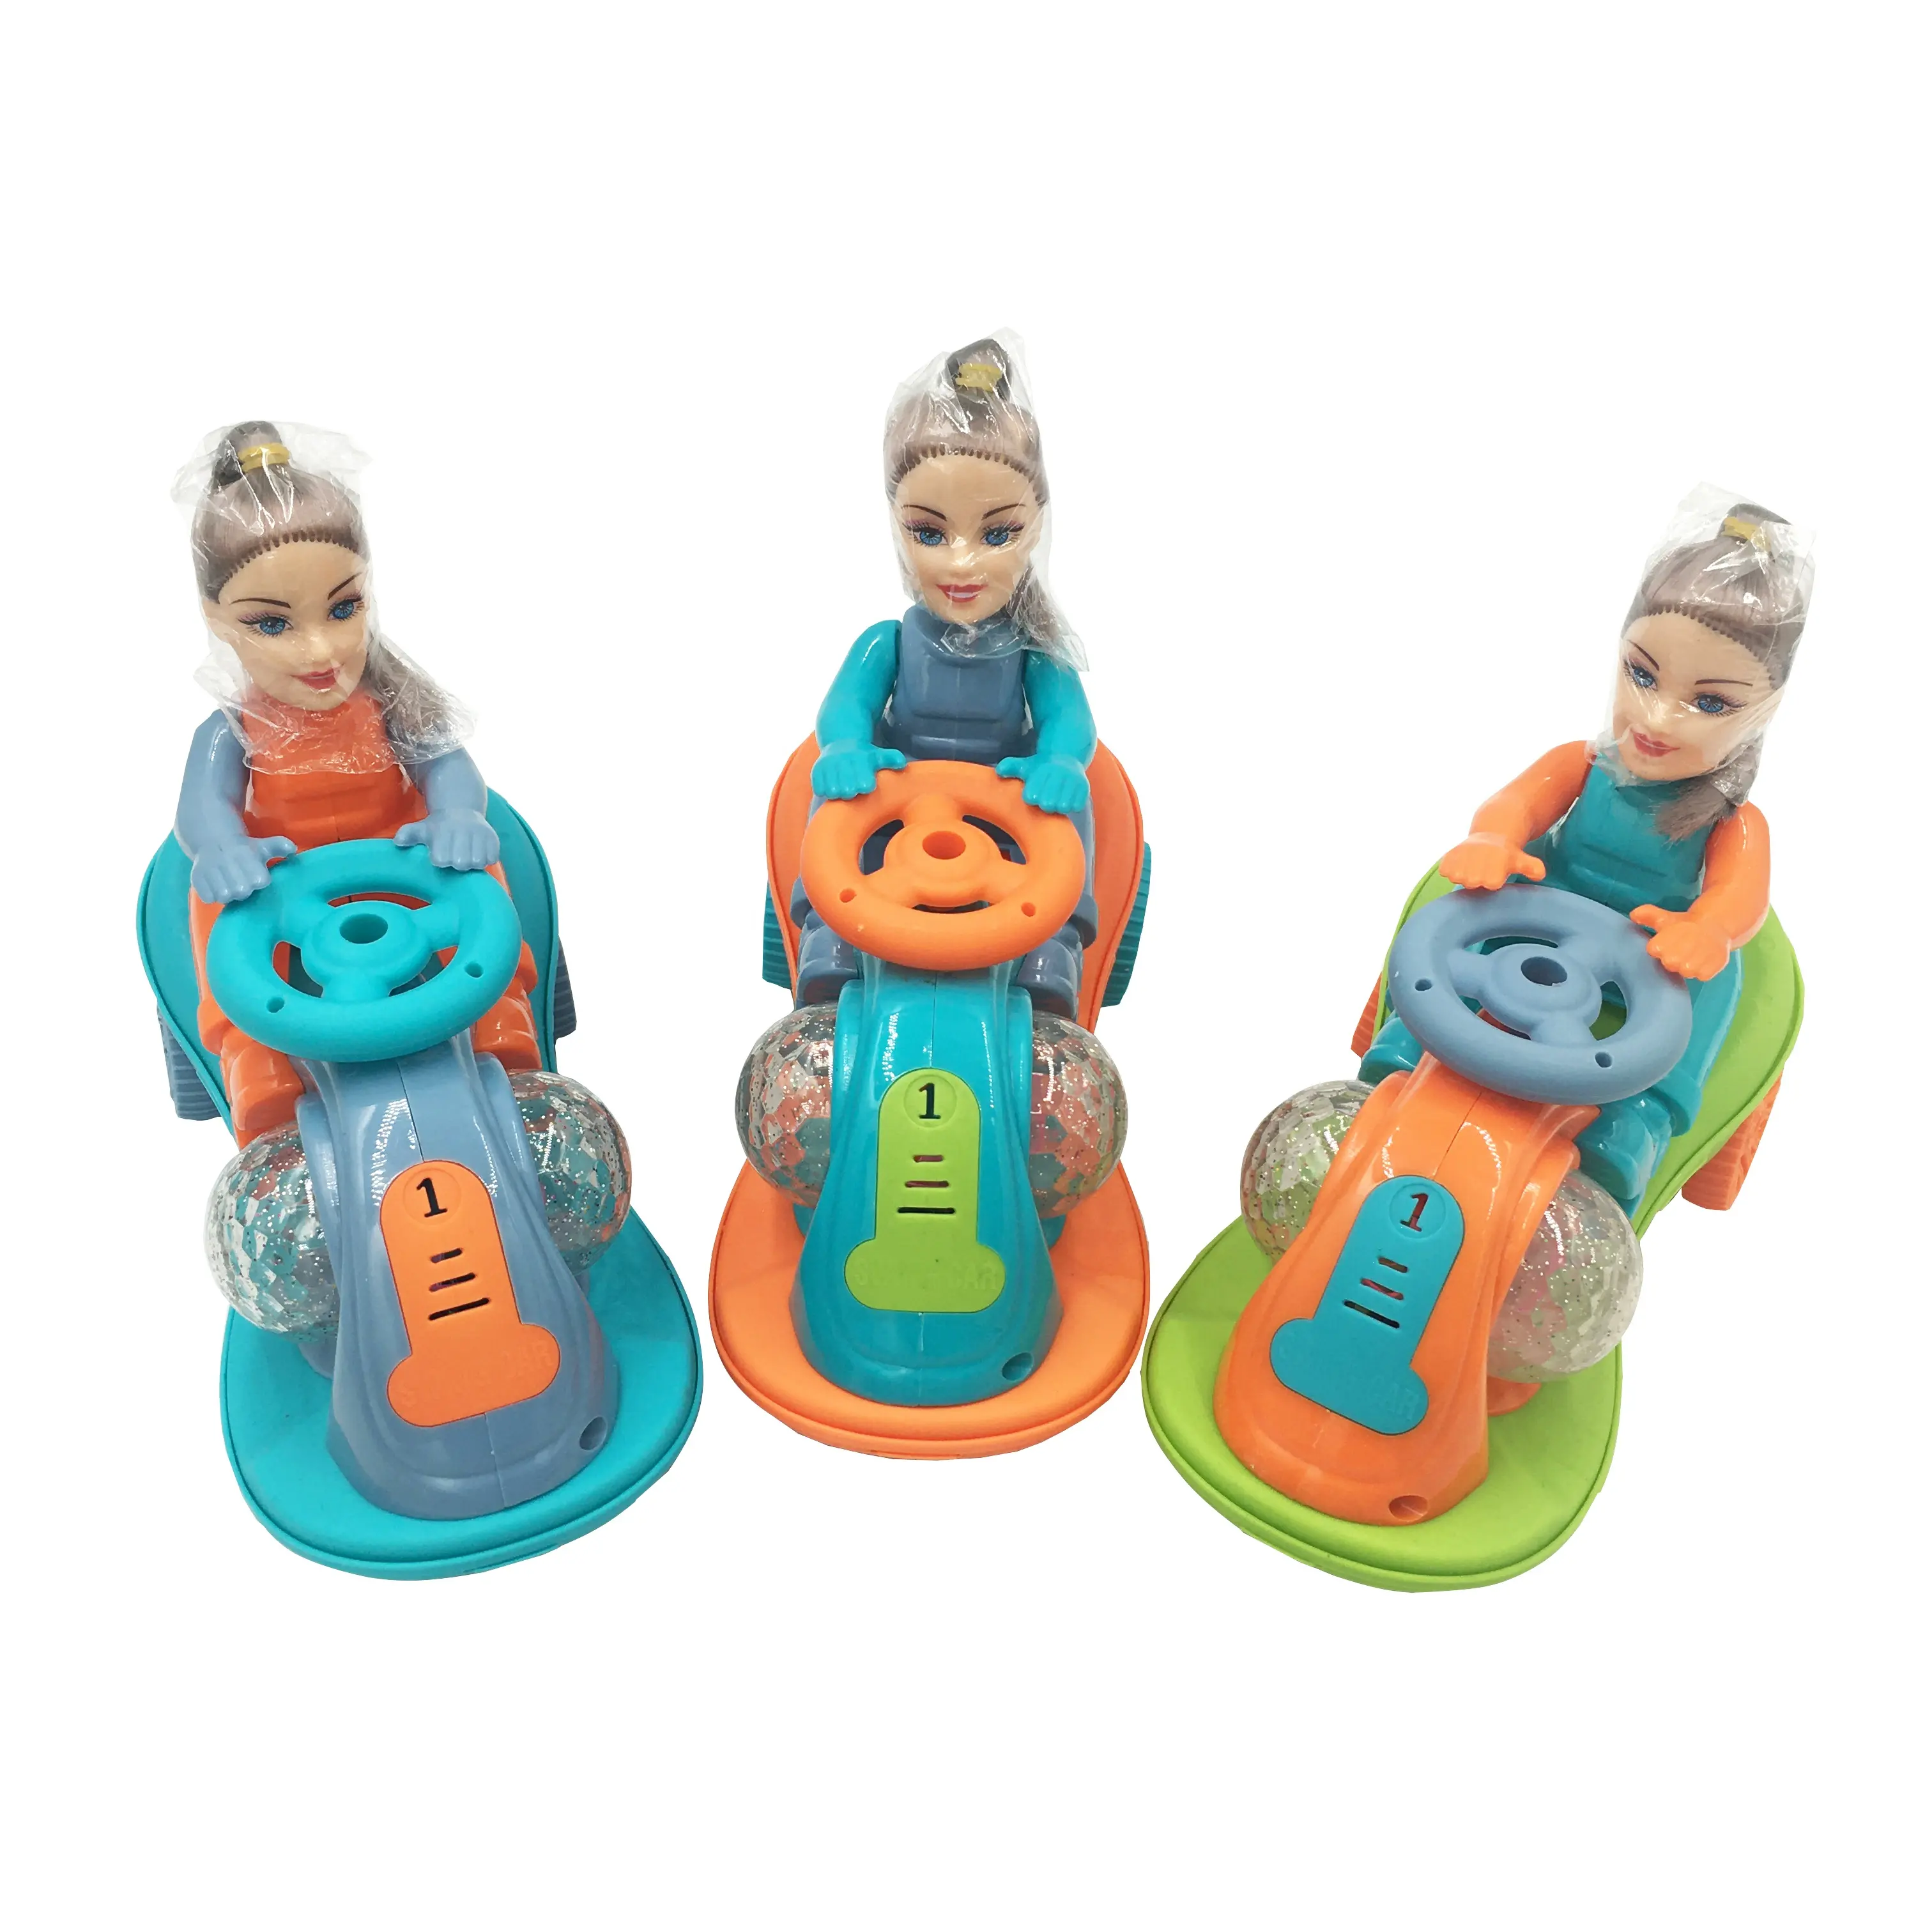 Jollysweets boneca para meninas, brinquedo de carro, com corda, iluminação, motobarco, plástico, com doces, novo, 2021